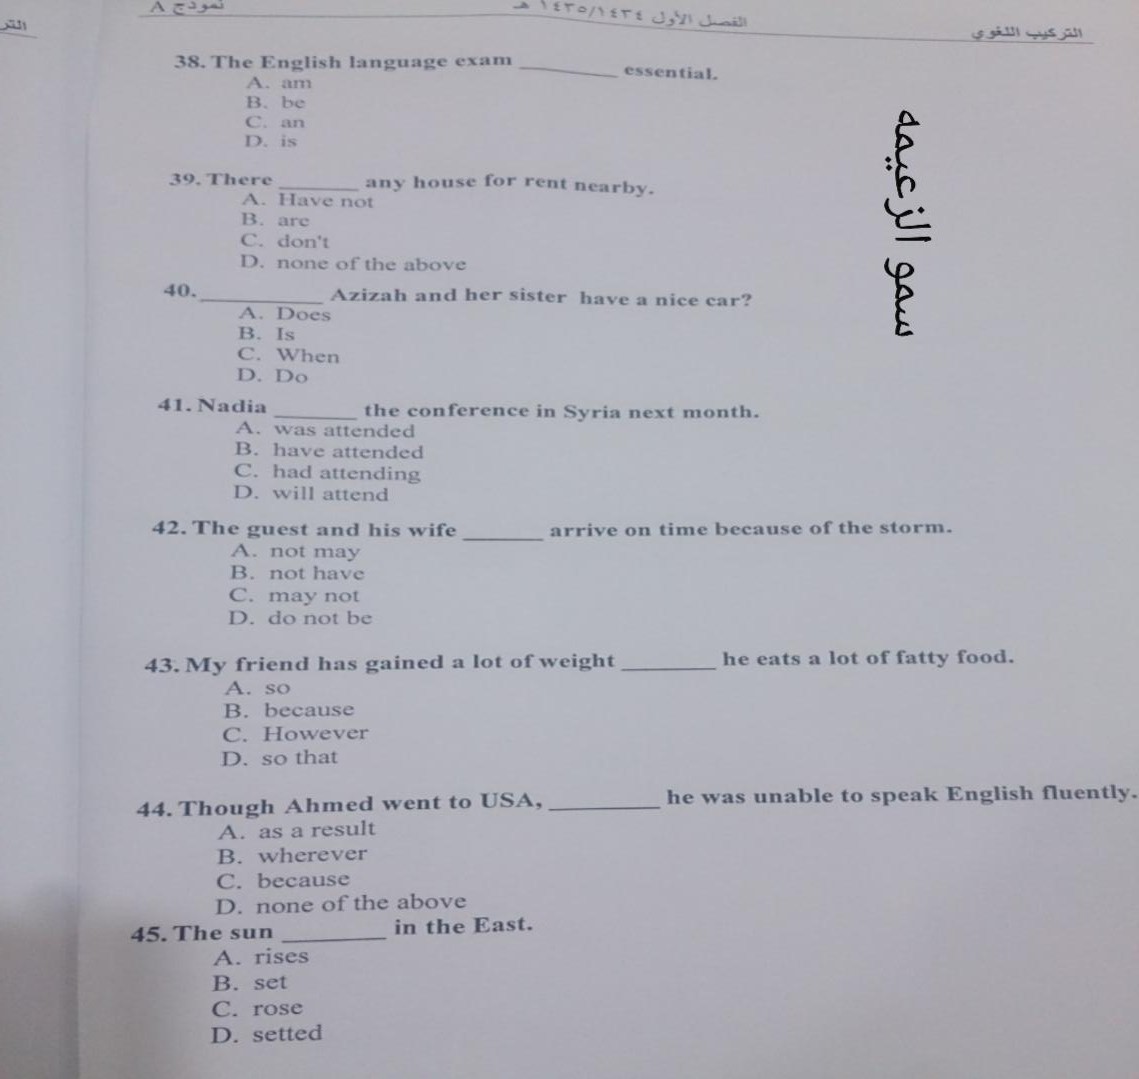 اسئلة اختبار مادة التركيب اللغوي الفصل الدراسي الأول 1435هـ نموذج (a)